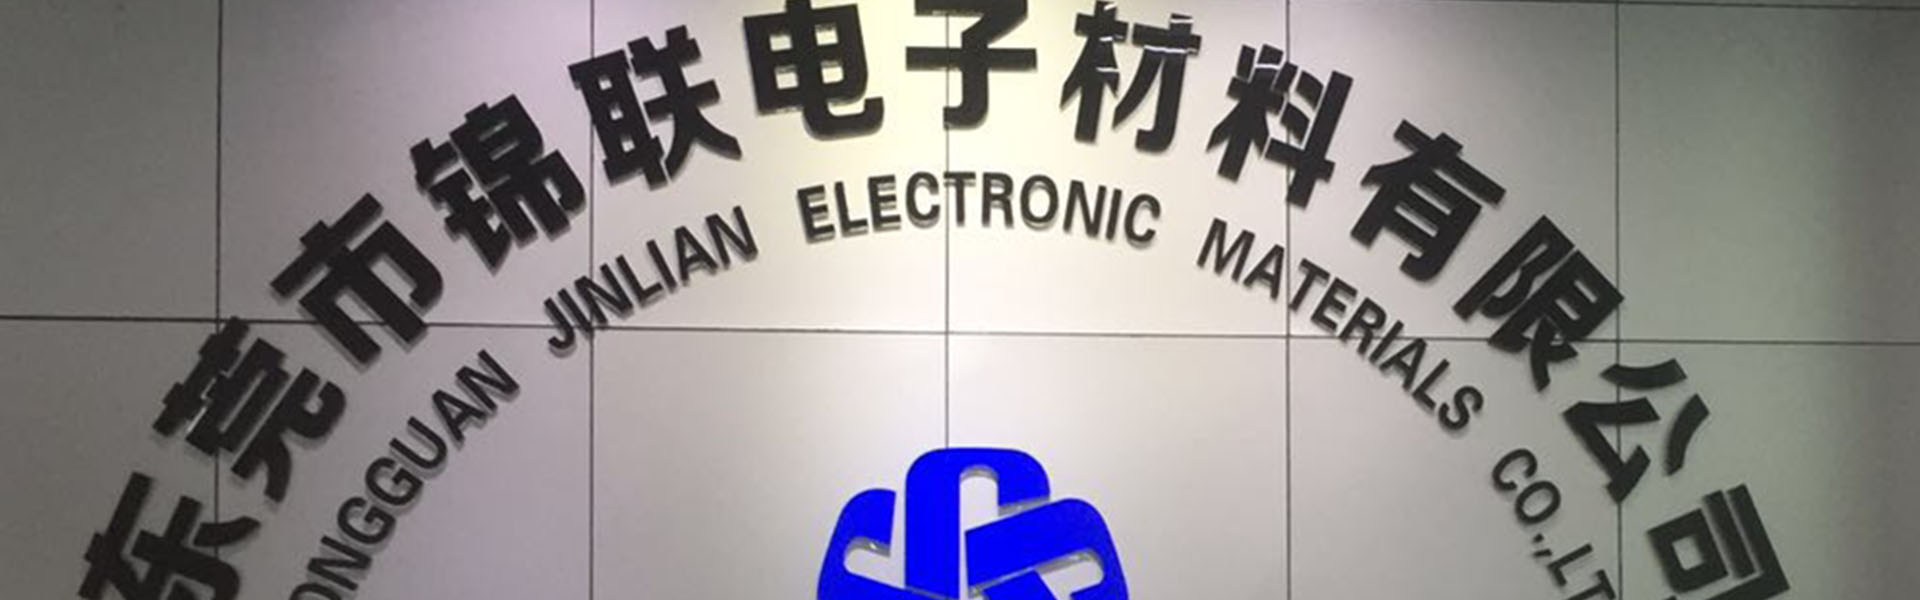 ブリスターボックス、トレイ、キャリアテープ,Dongguan Jinlian Electronic Materials Co., Ltd